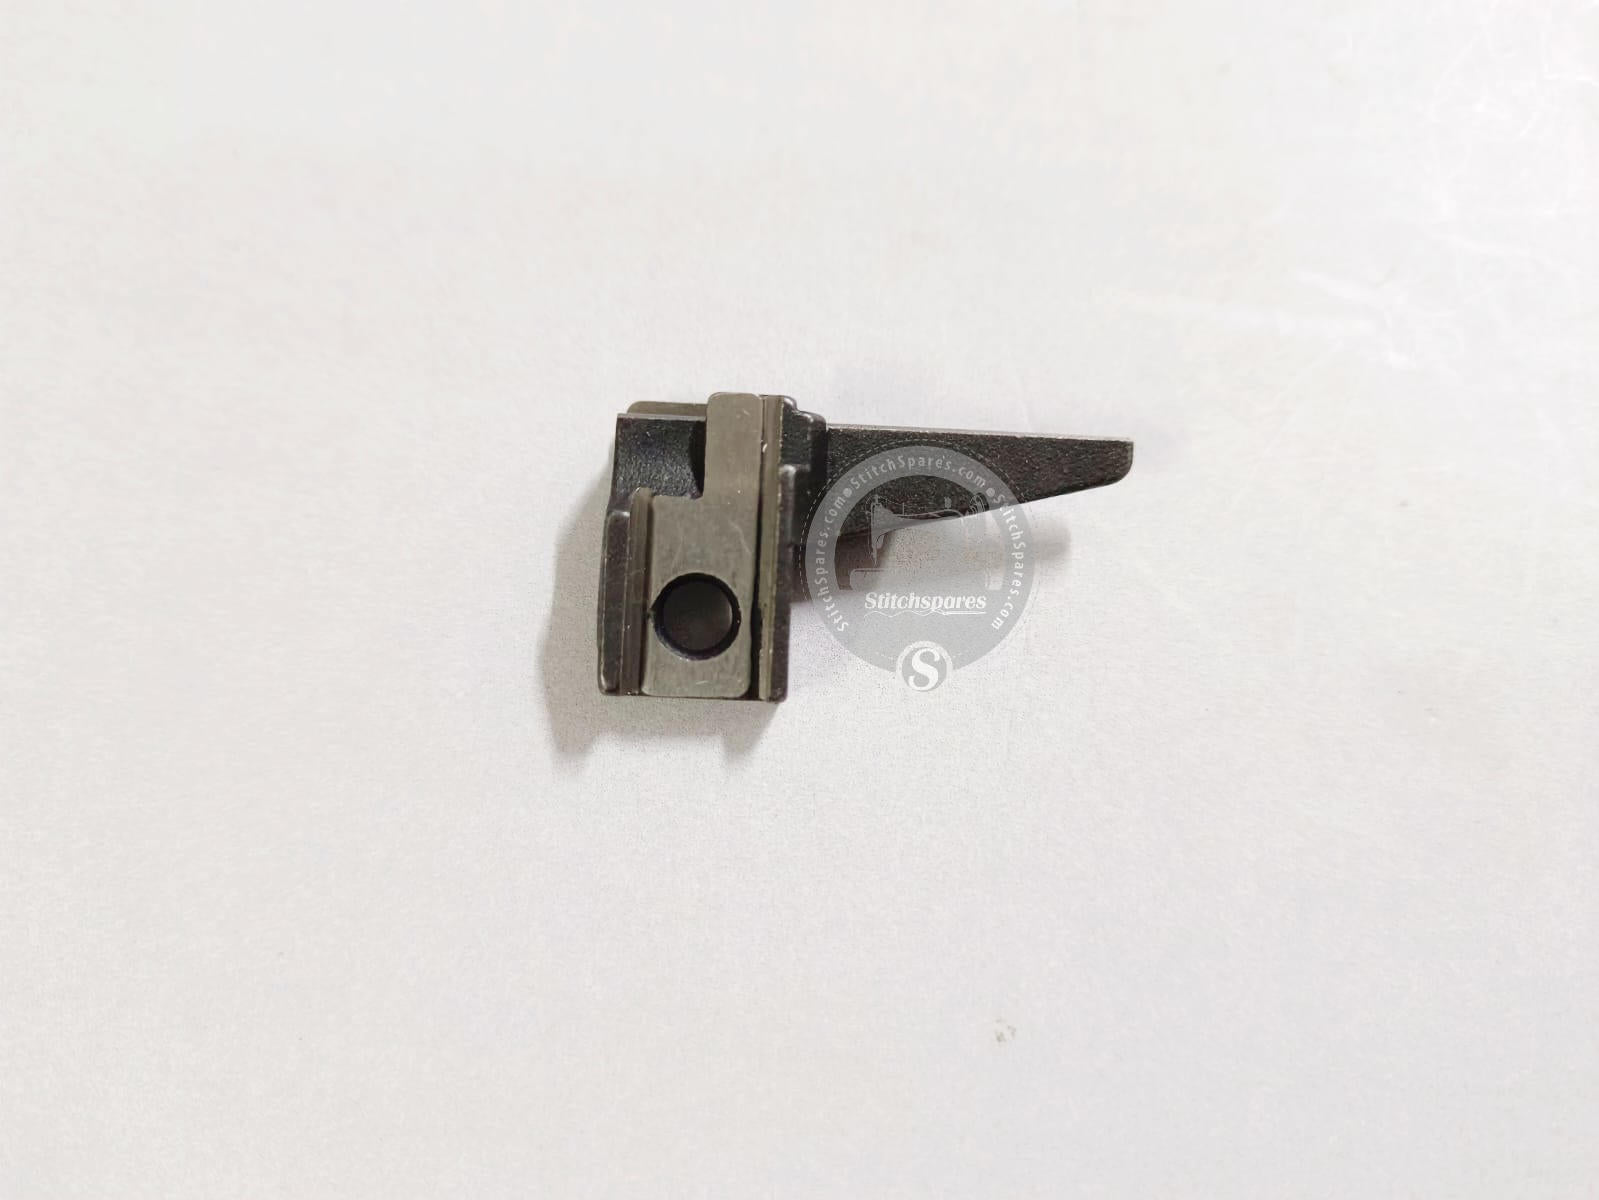 Portacuchillas superior KR20 para SIRUBA 757, pieza de repuesto para máquina de coser Overlock